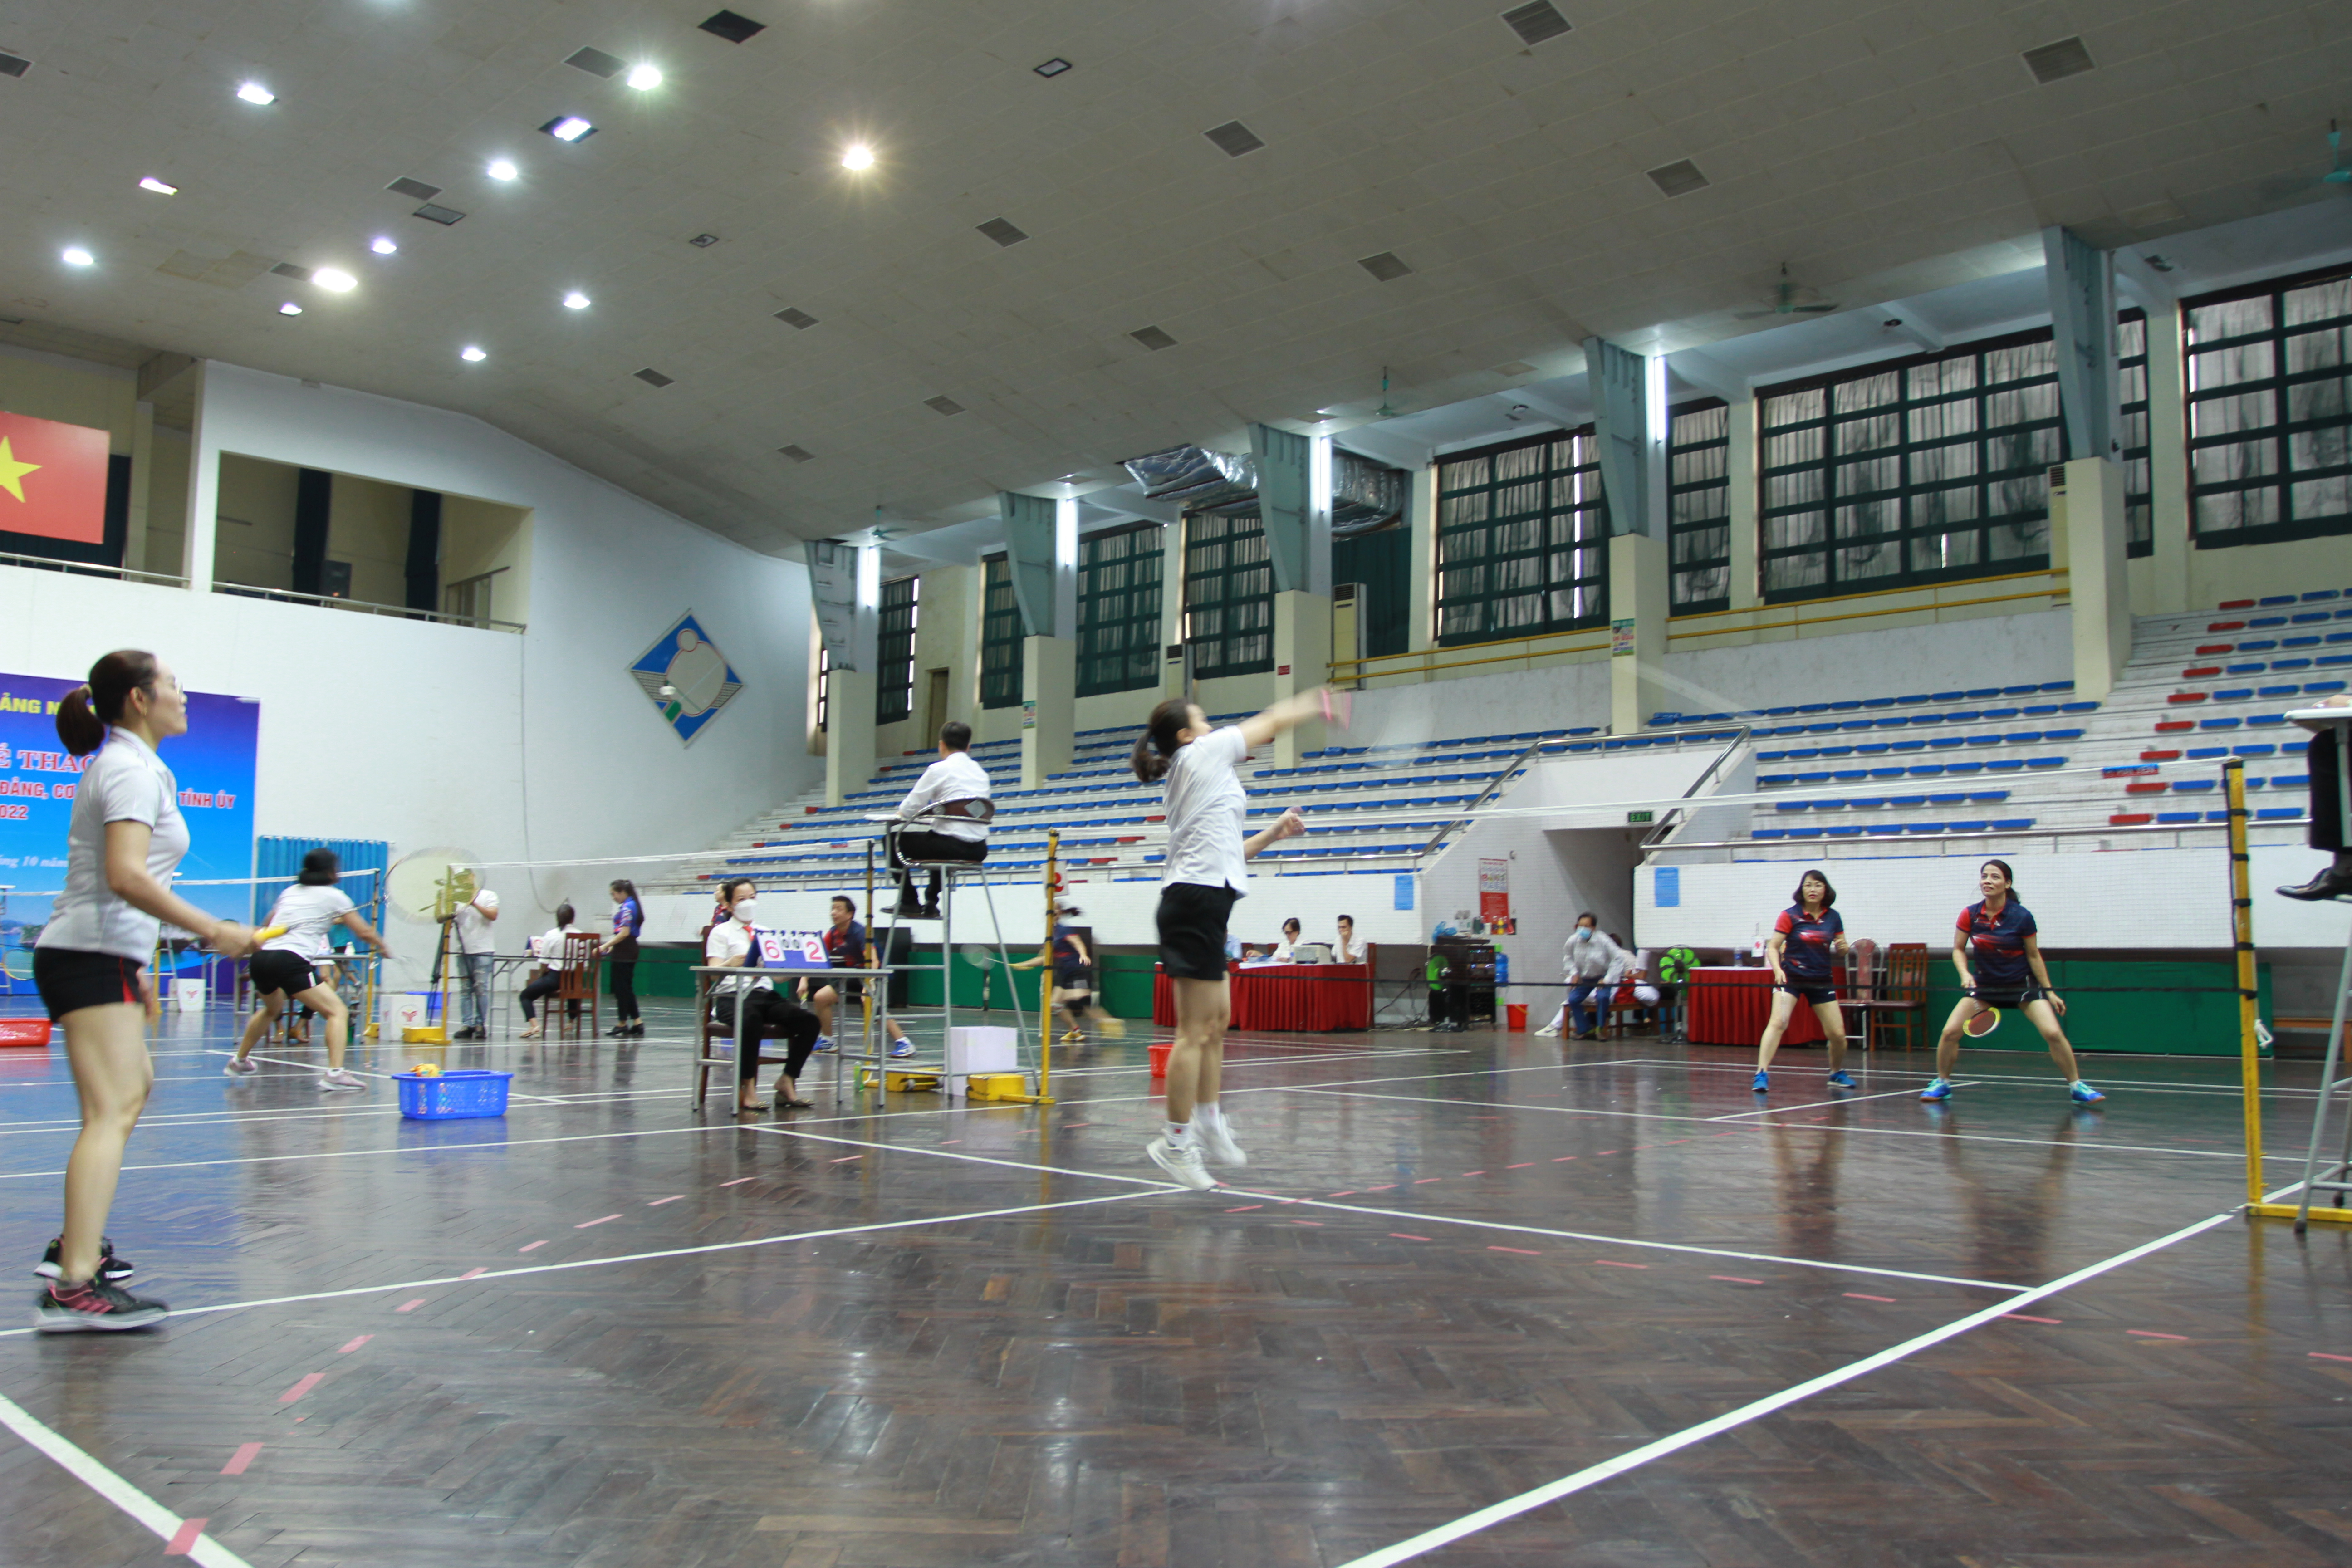 Các vận động viên thi đấu môn cầu lông.